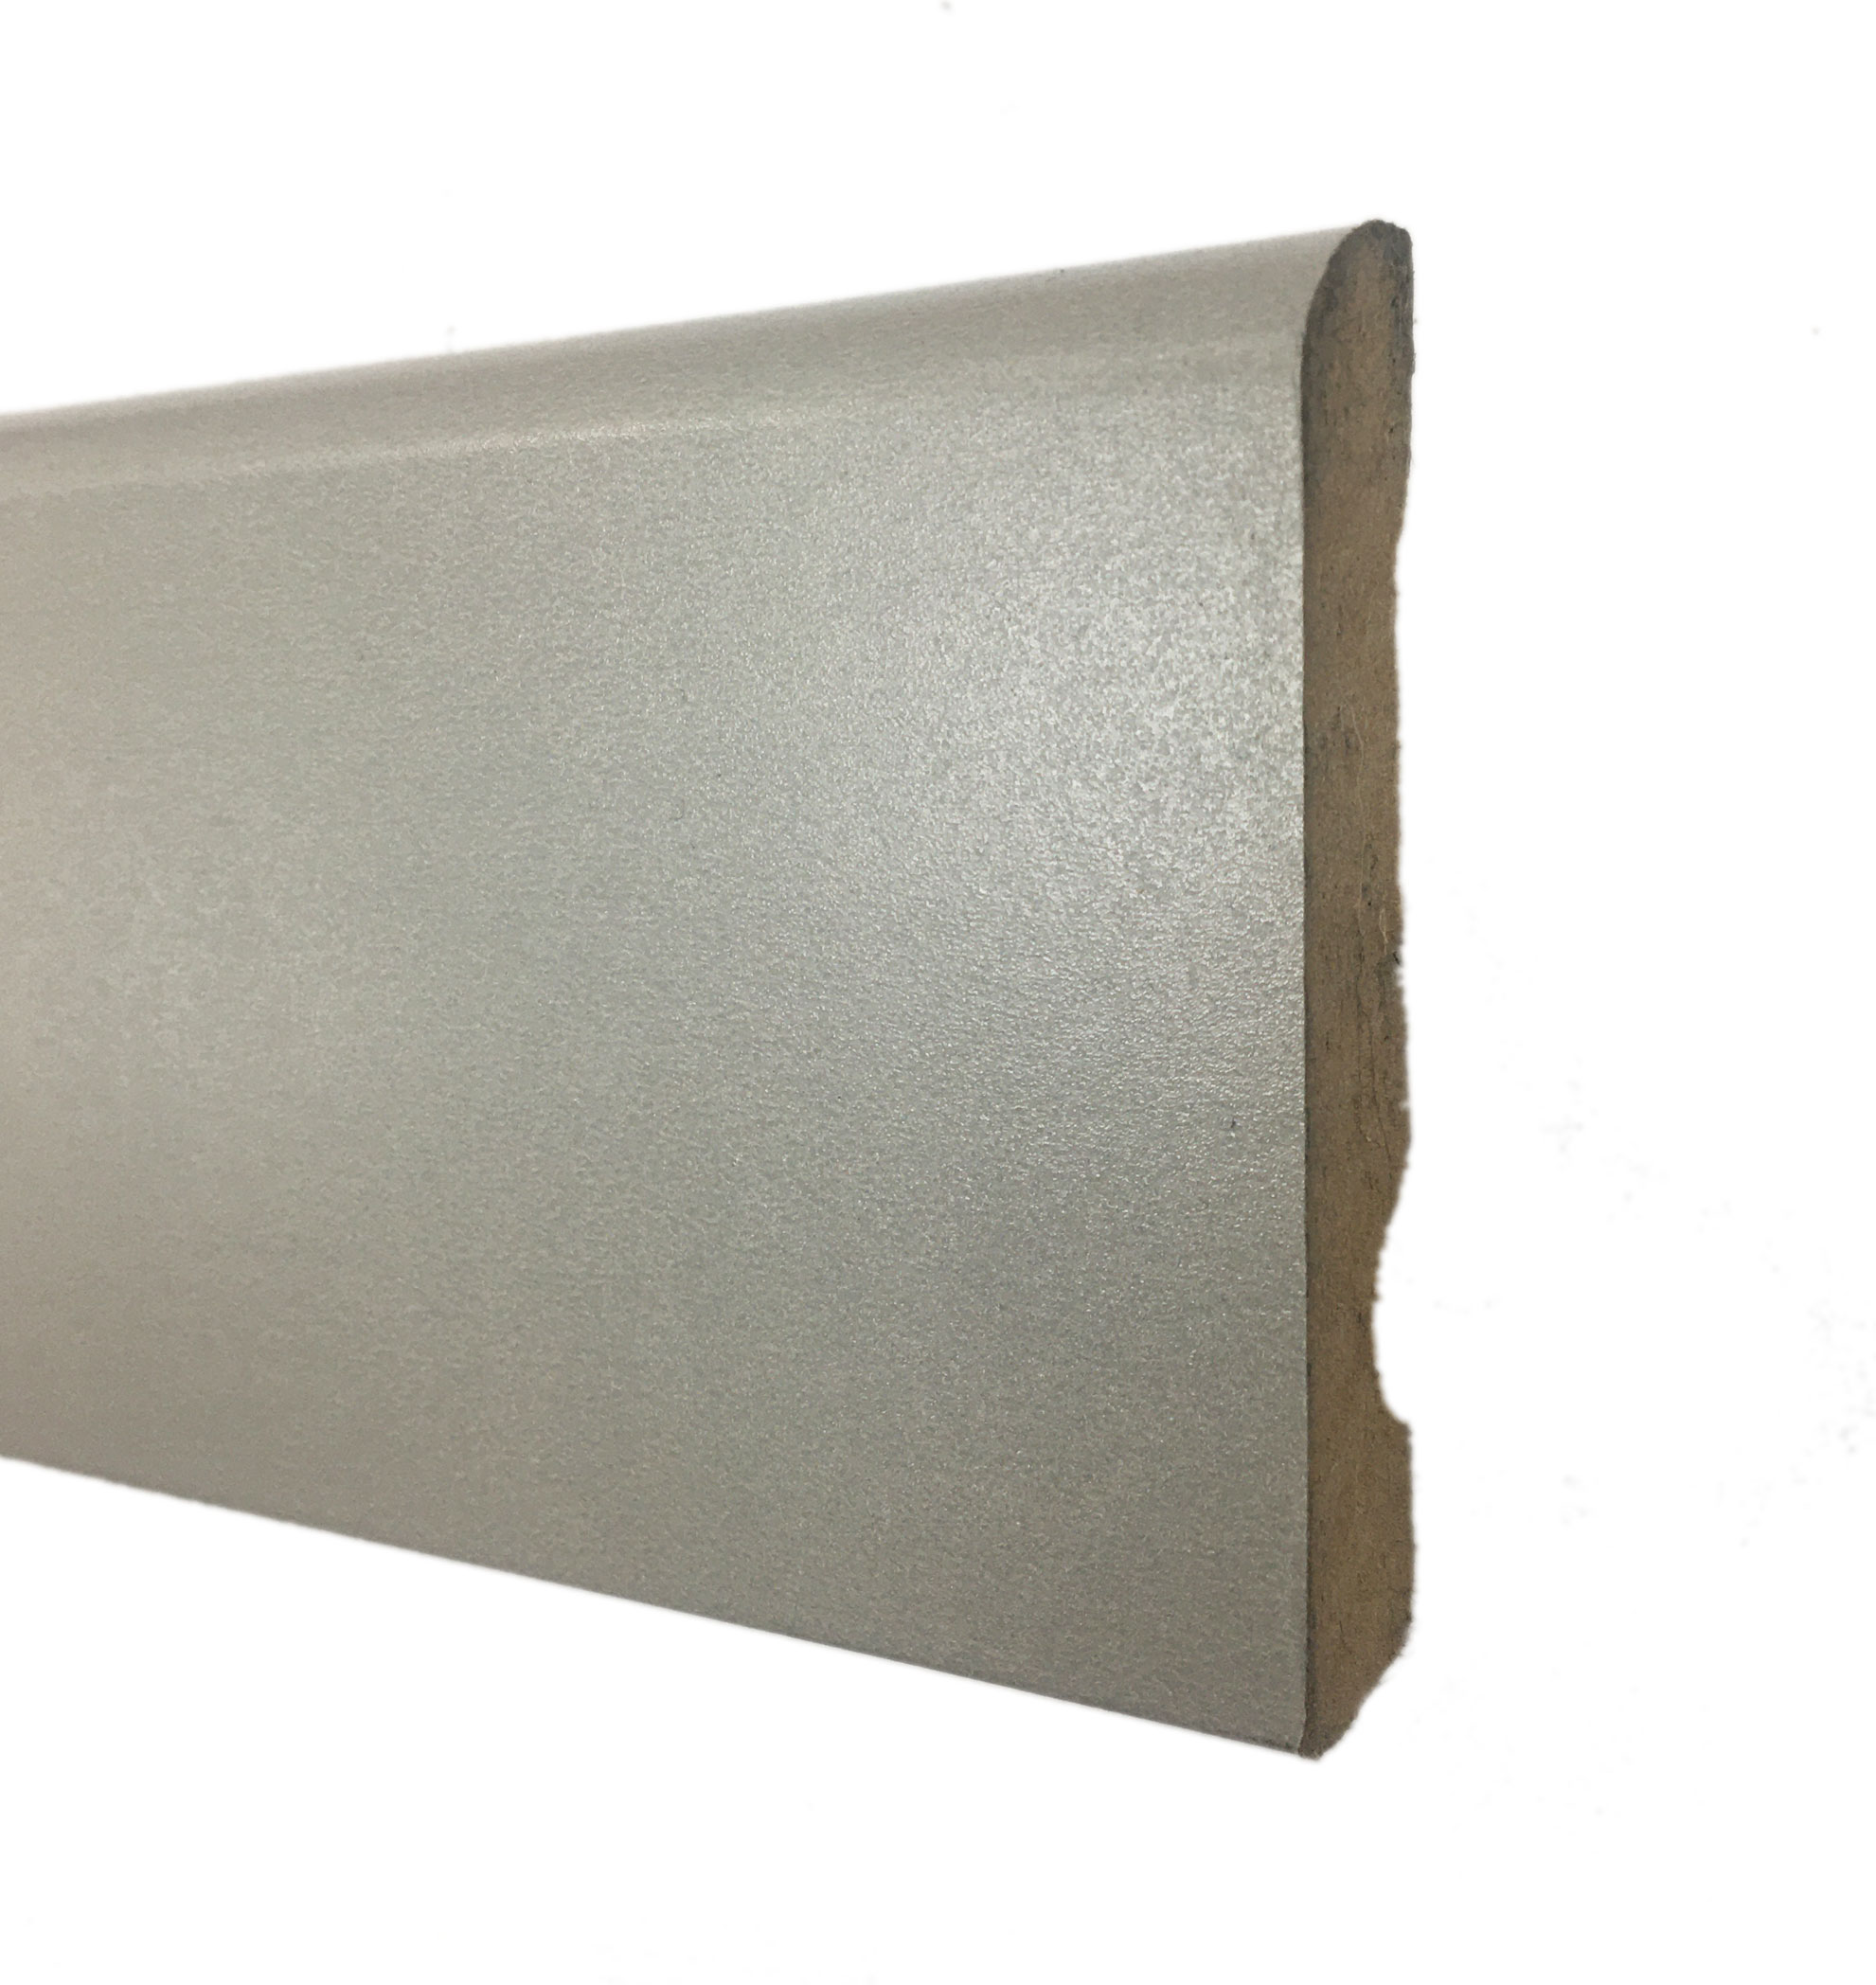 Plinthe De Haute Qualite - APLIN16007 - Plinthe mdf grise 70x12 - 0964